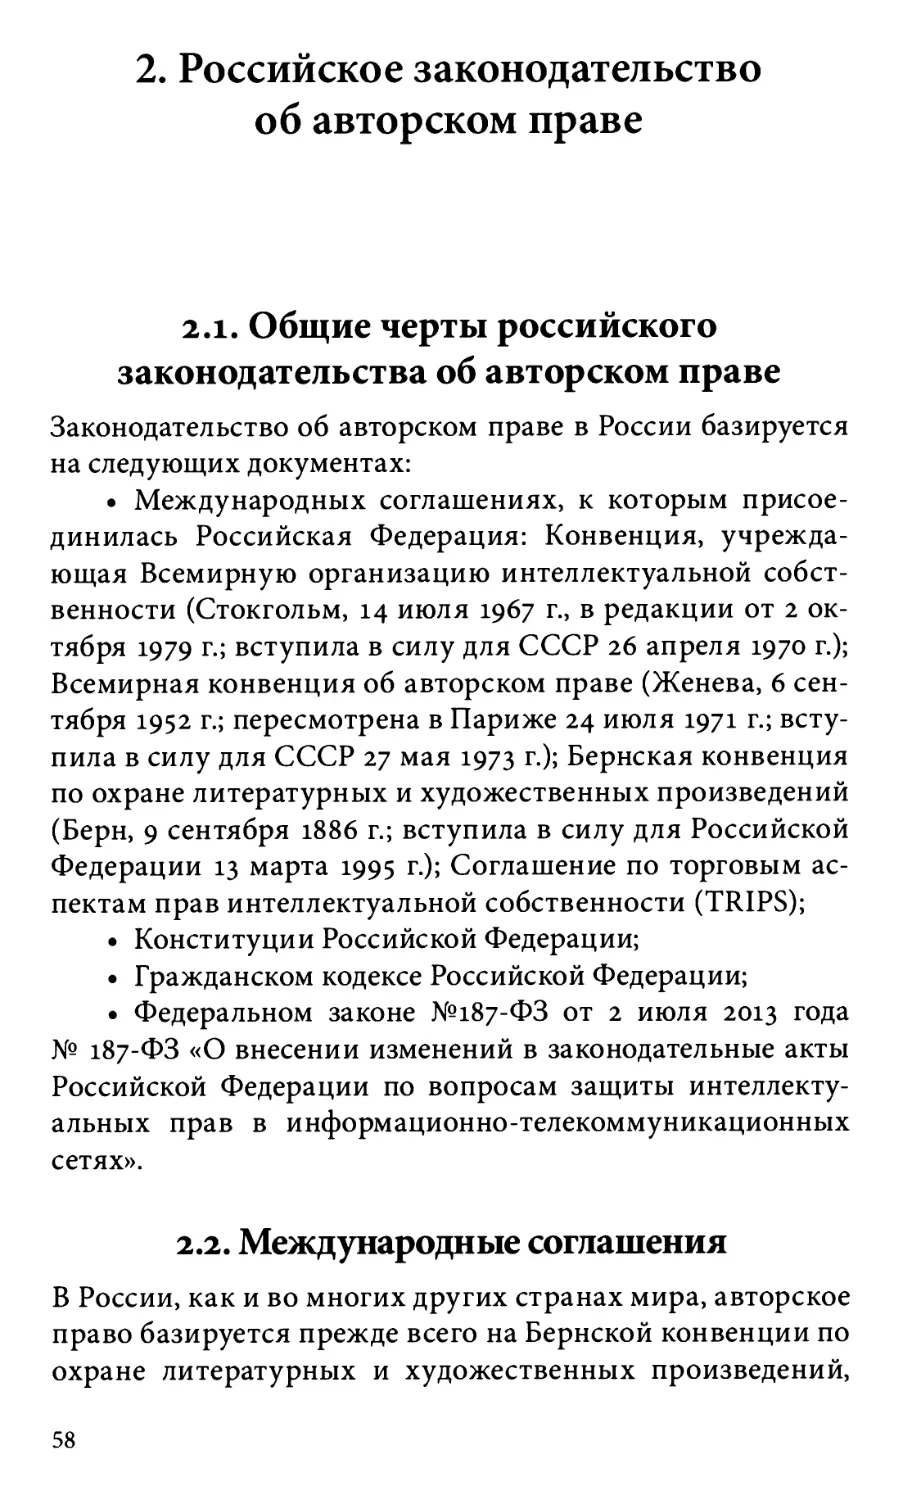 2. Российское законодательство об авторском праве
2.2. Международные соглашения